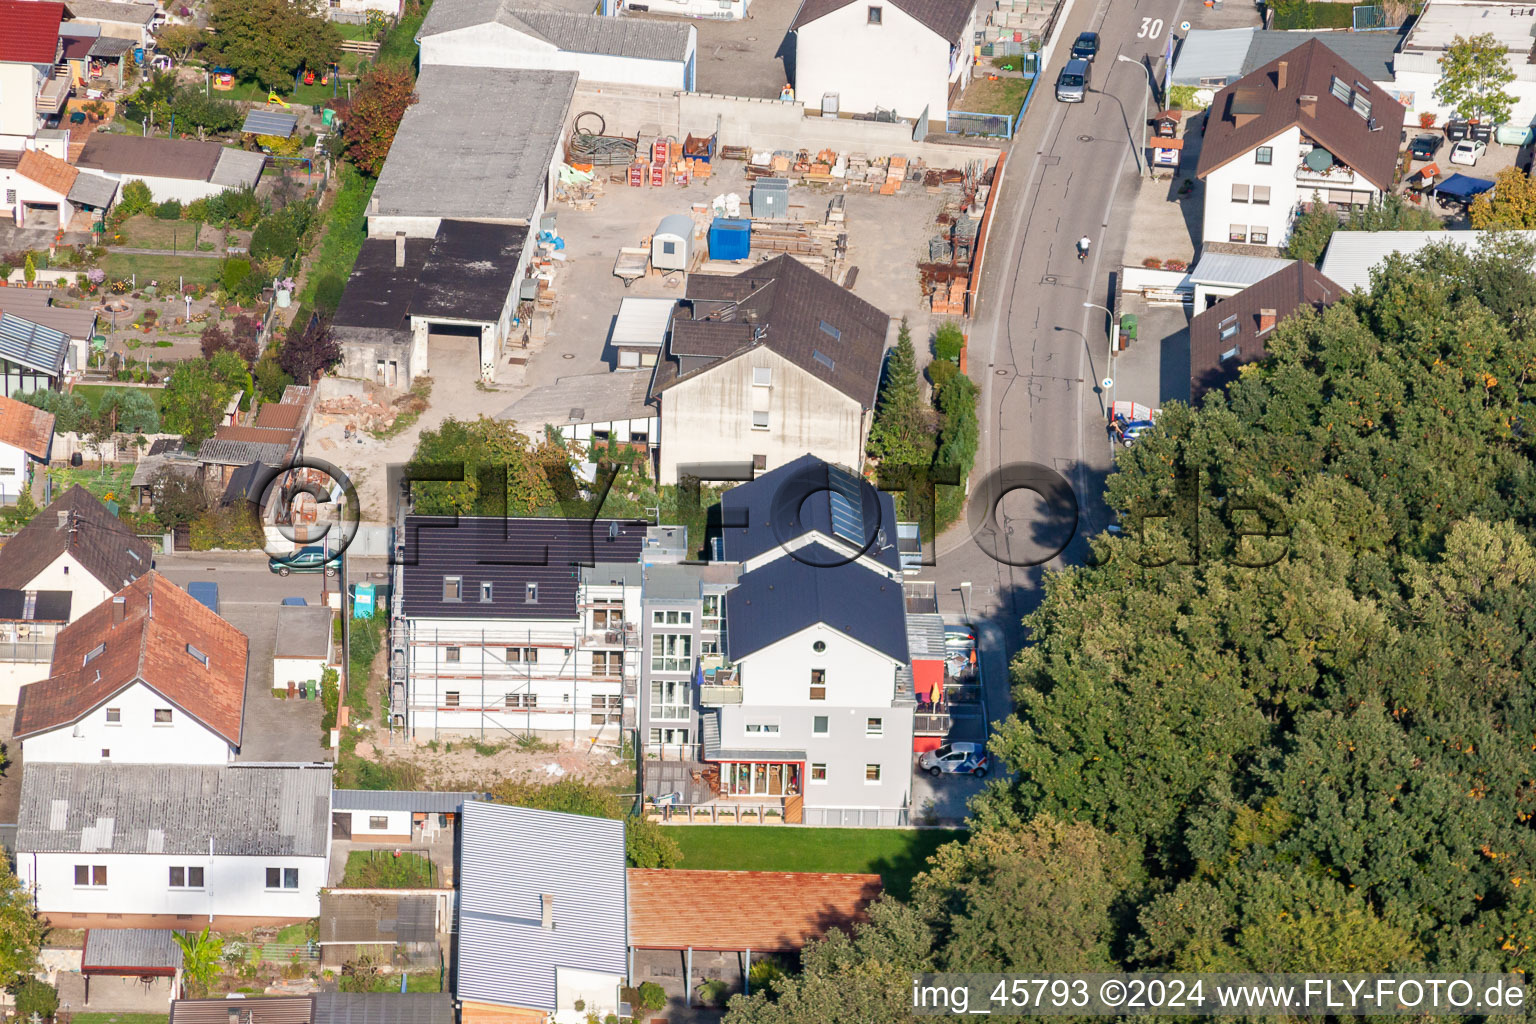 Siedlung Gartenstadt in Kandel im Bundesland Rheinland-Pfalz, Deutschland von oben gesehen